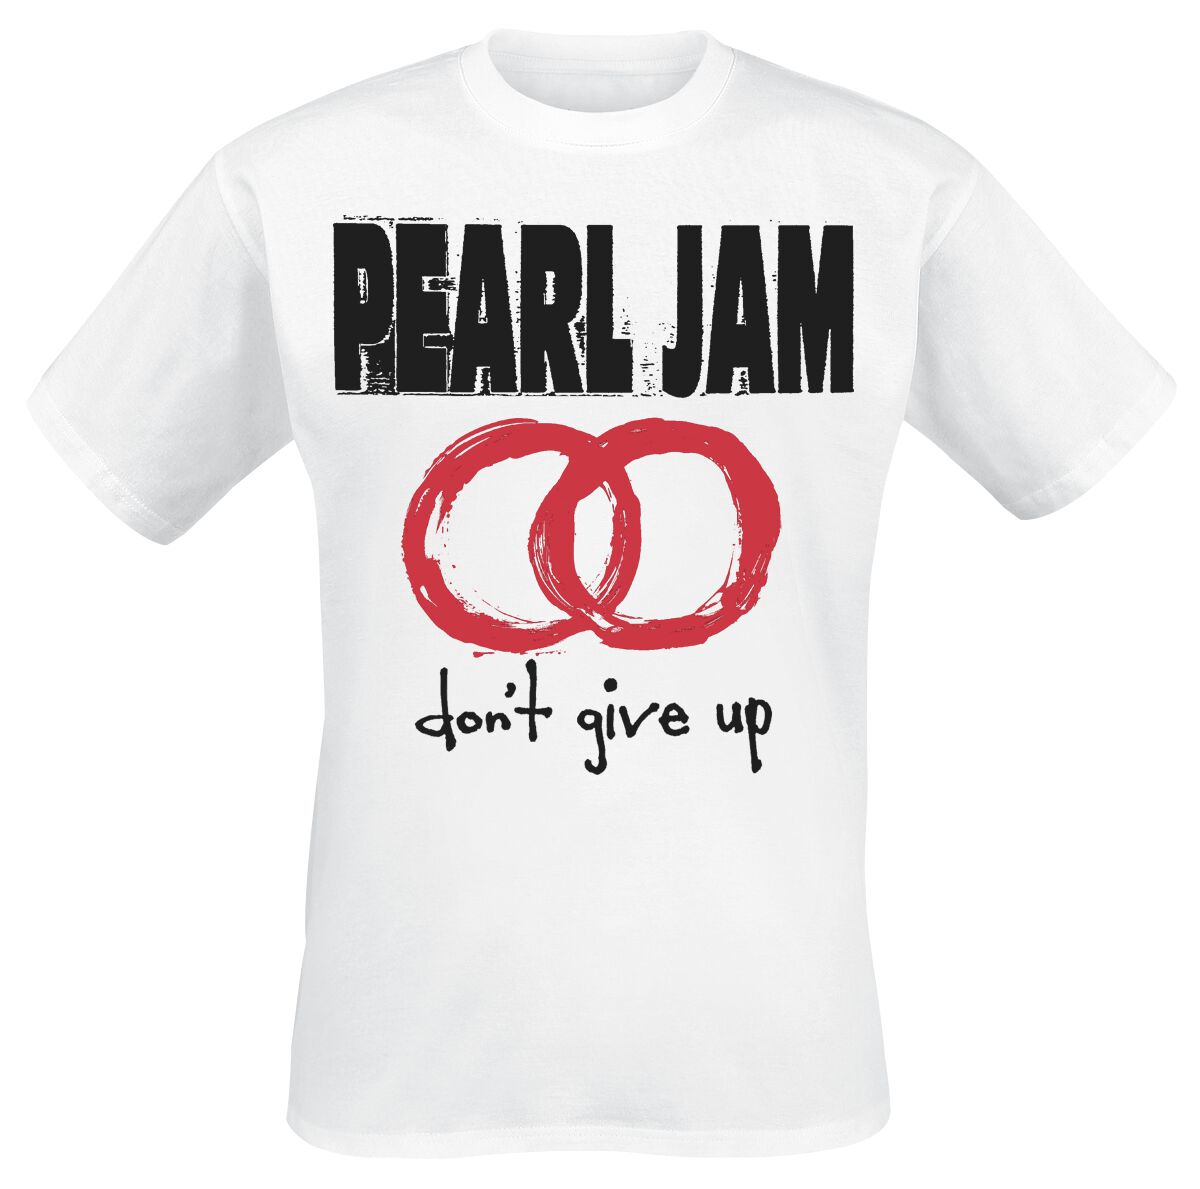 pearl jam t-shirt - dont give up - m bis xxl - fÃ¼r mÃ¤nner - grÃ¶ÃŸe xl - - lizenziertes merchandise! weiÃŸ